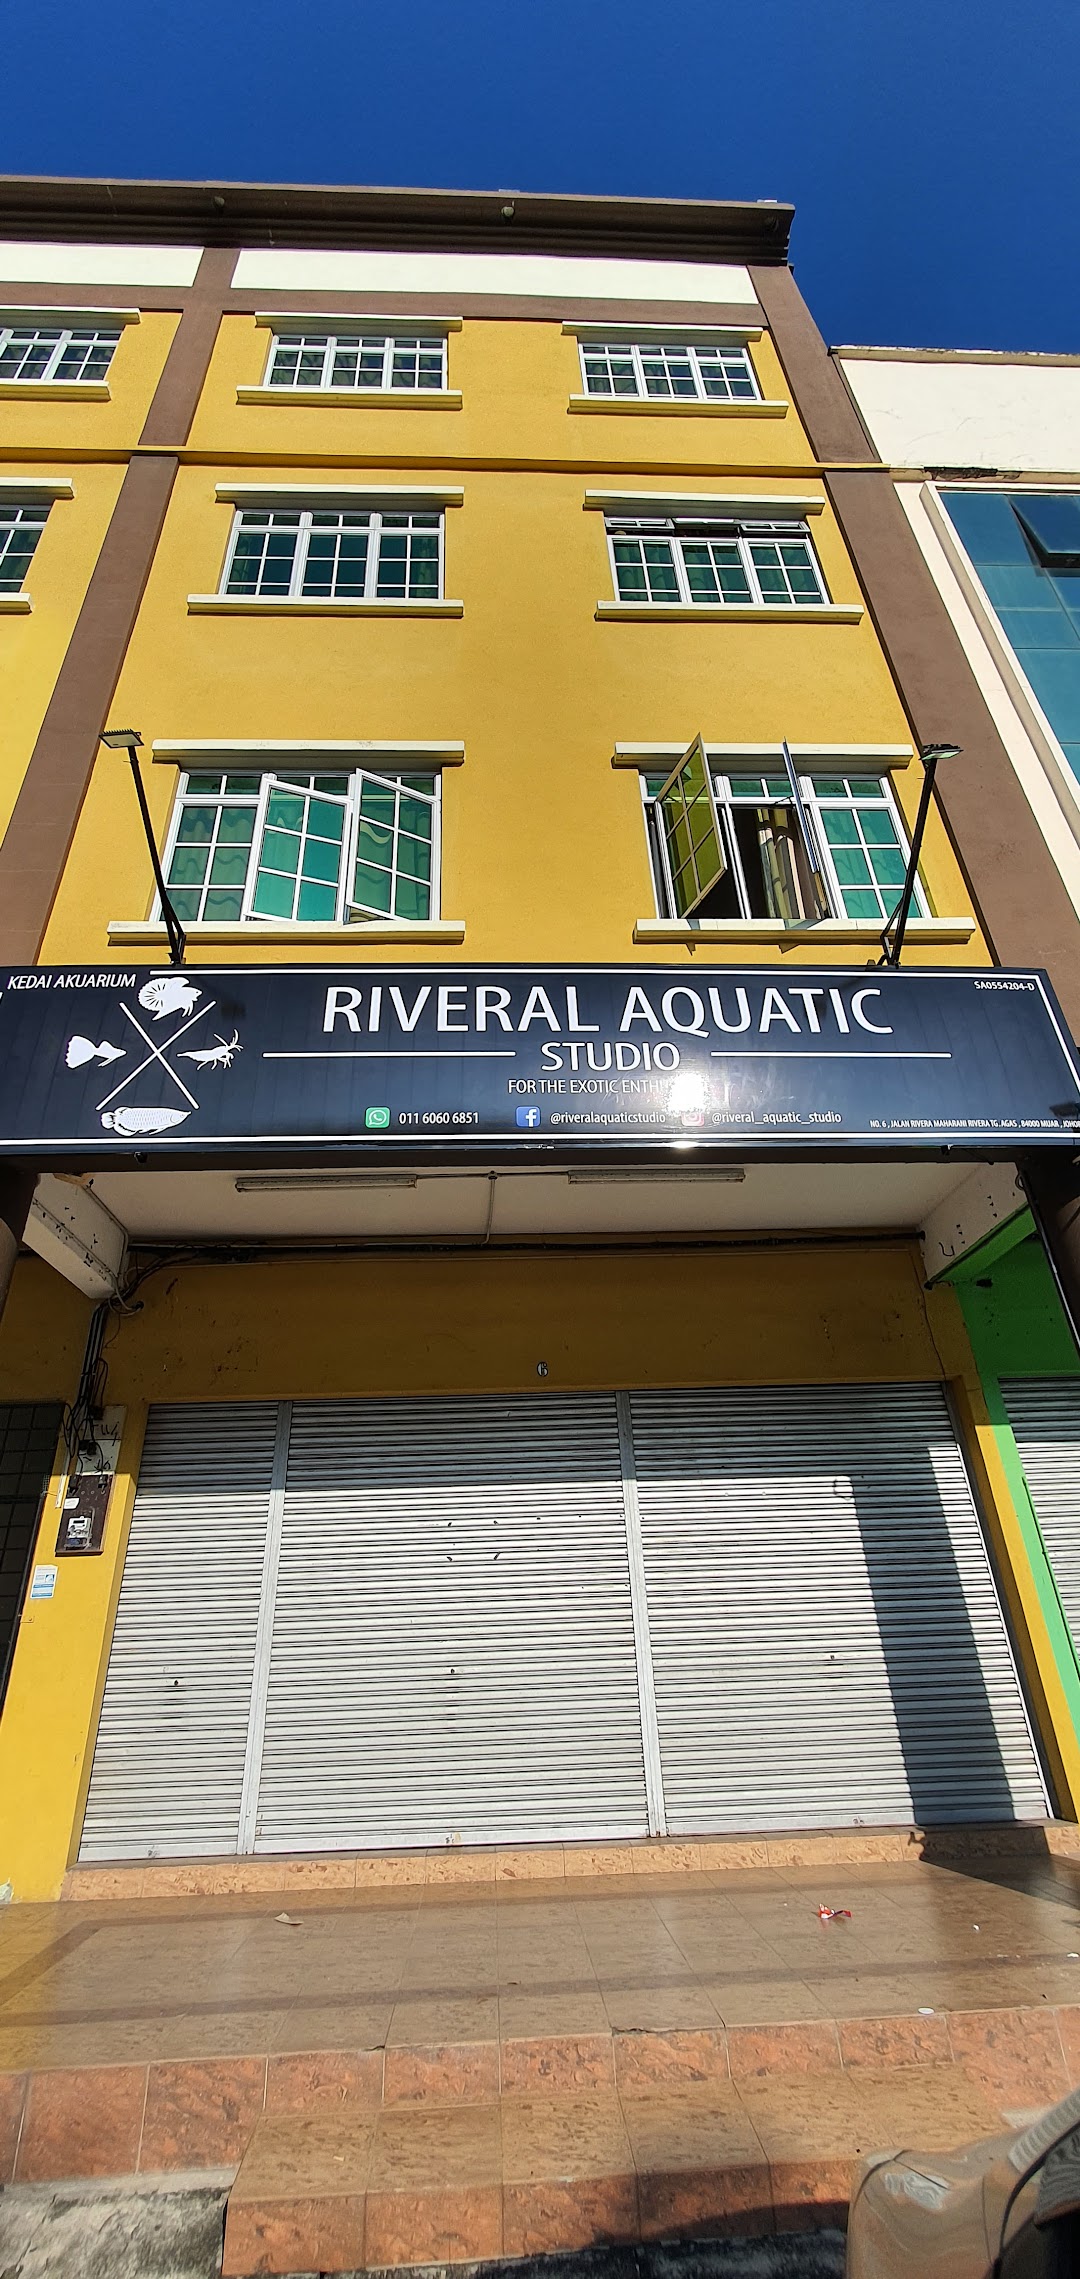 Riveral Aquatic Studio